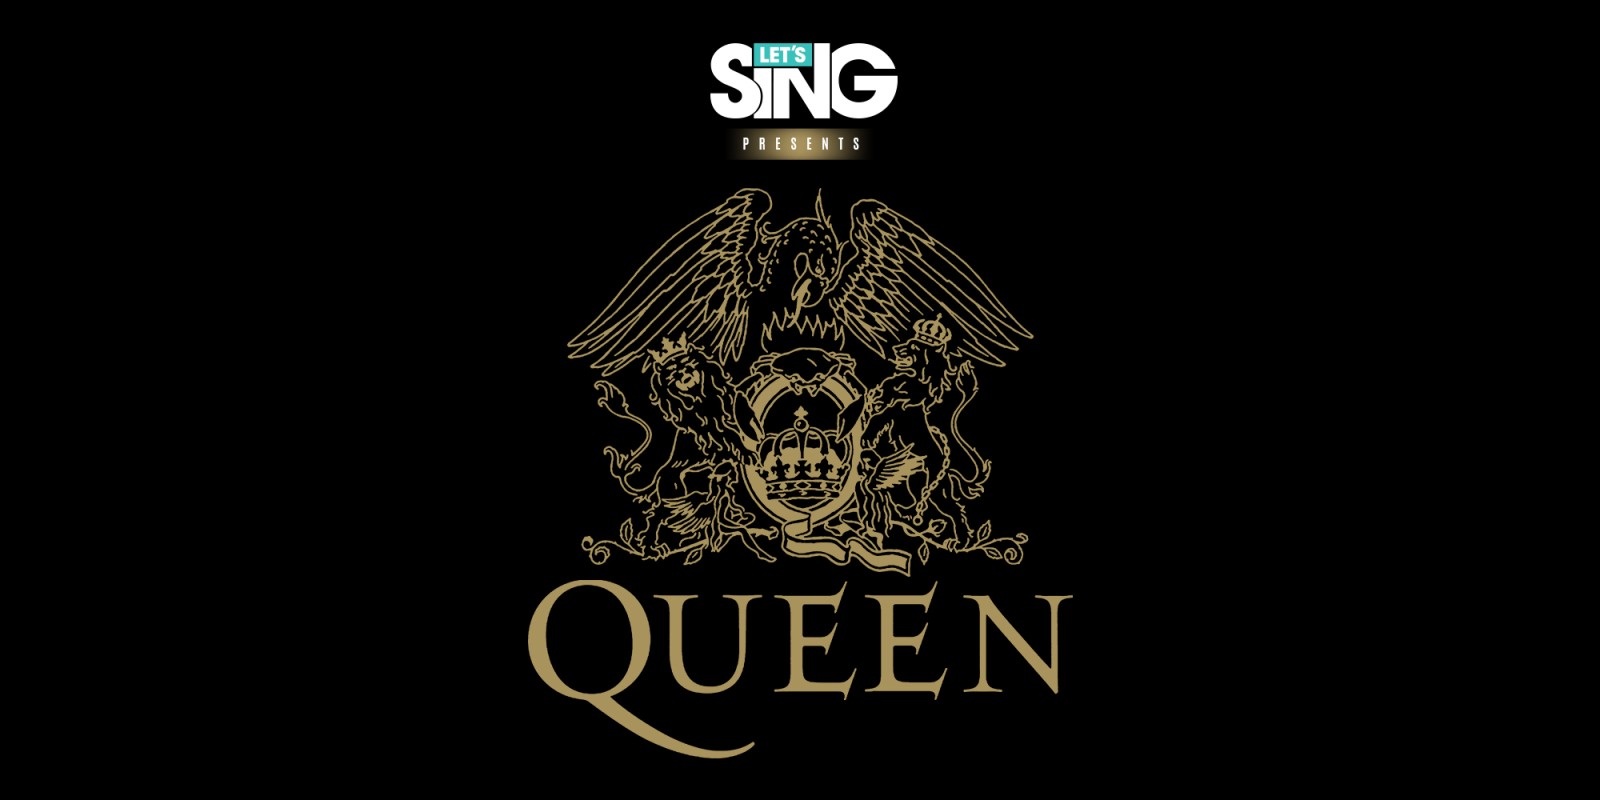 Lets Sing Queen